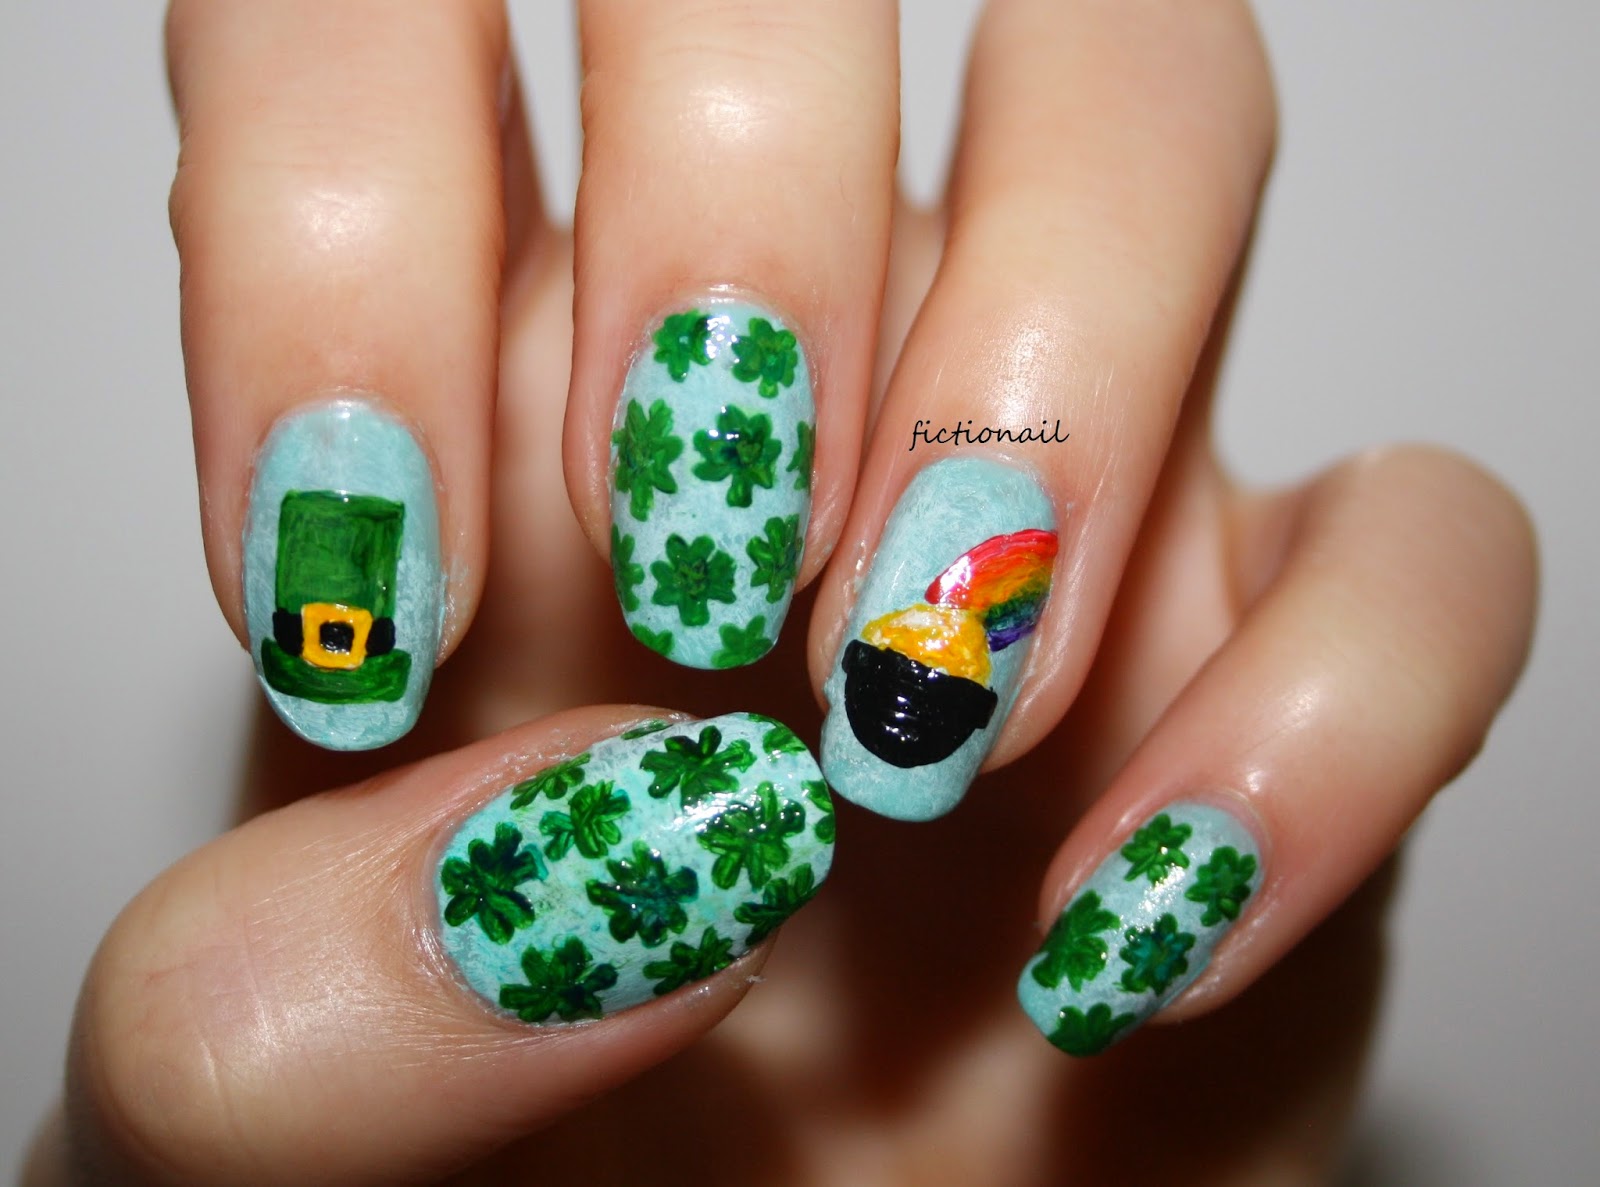 ehmkay nails: Happy St. Patrick's Day Nails! Ireland Flag and Shamrock  Glitter